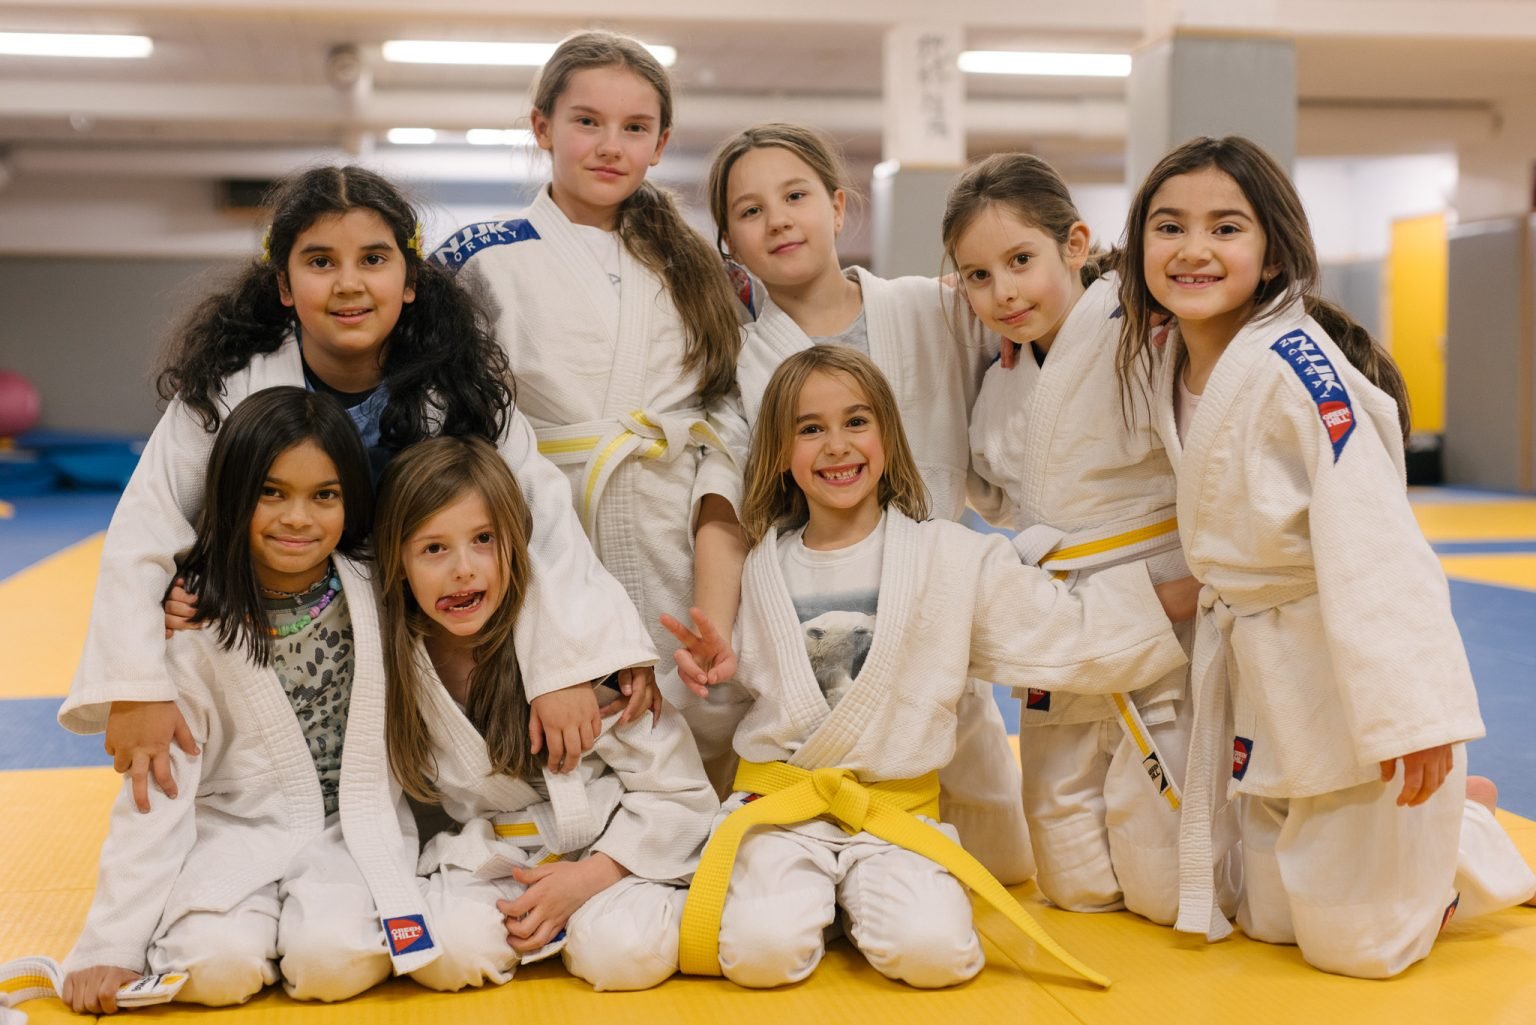 en gjeng på åtte jenter iført hvite judodrakter med gule belter som sitter samlet i en treningssal og holder rundt hverandre og smiler inn i kameraet.